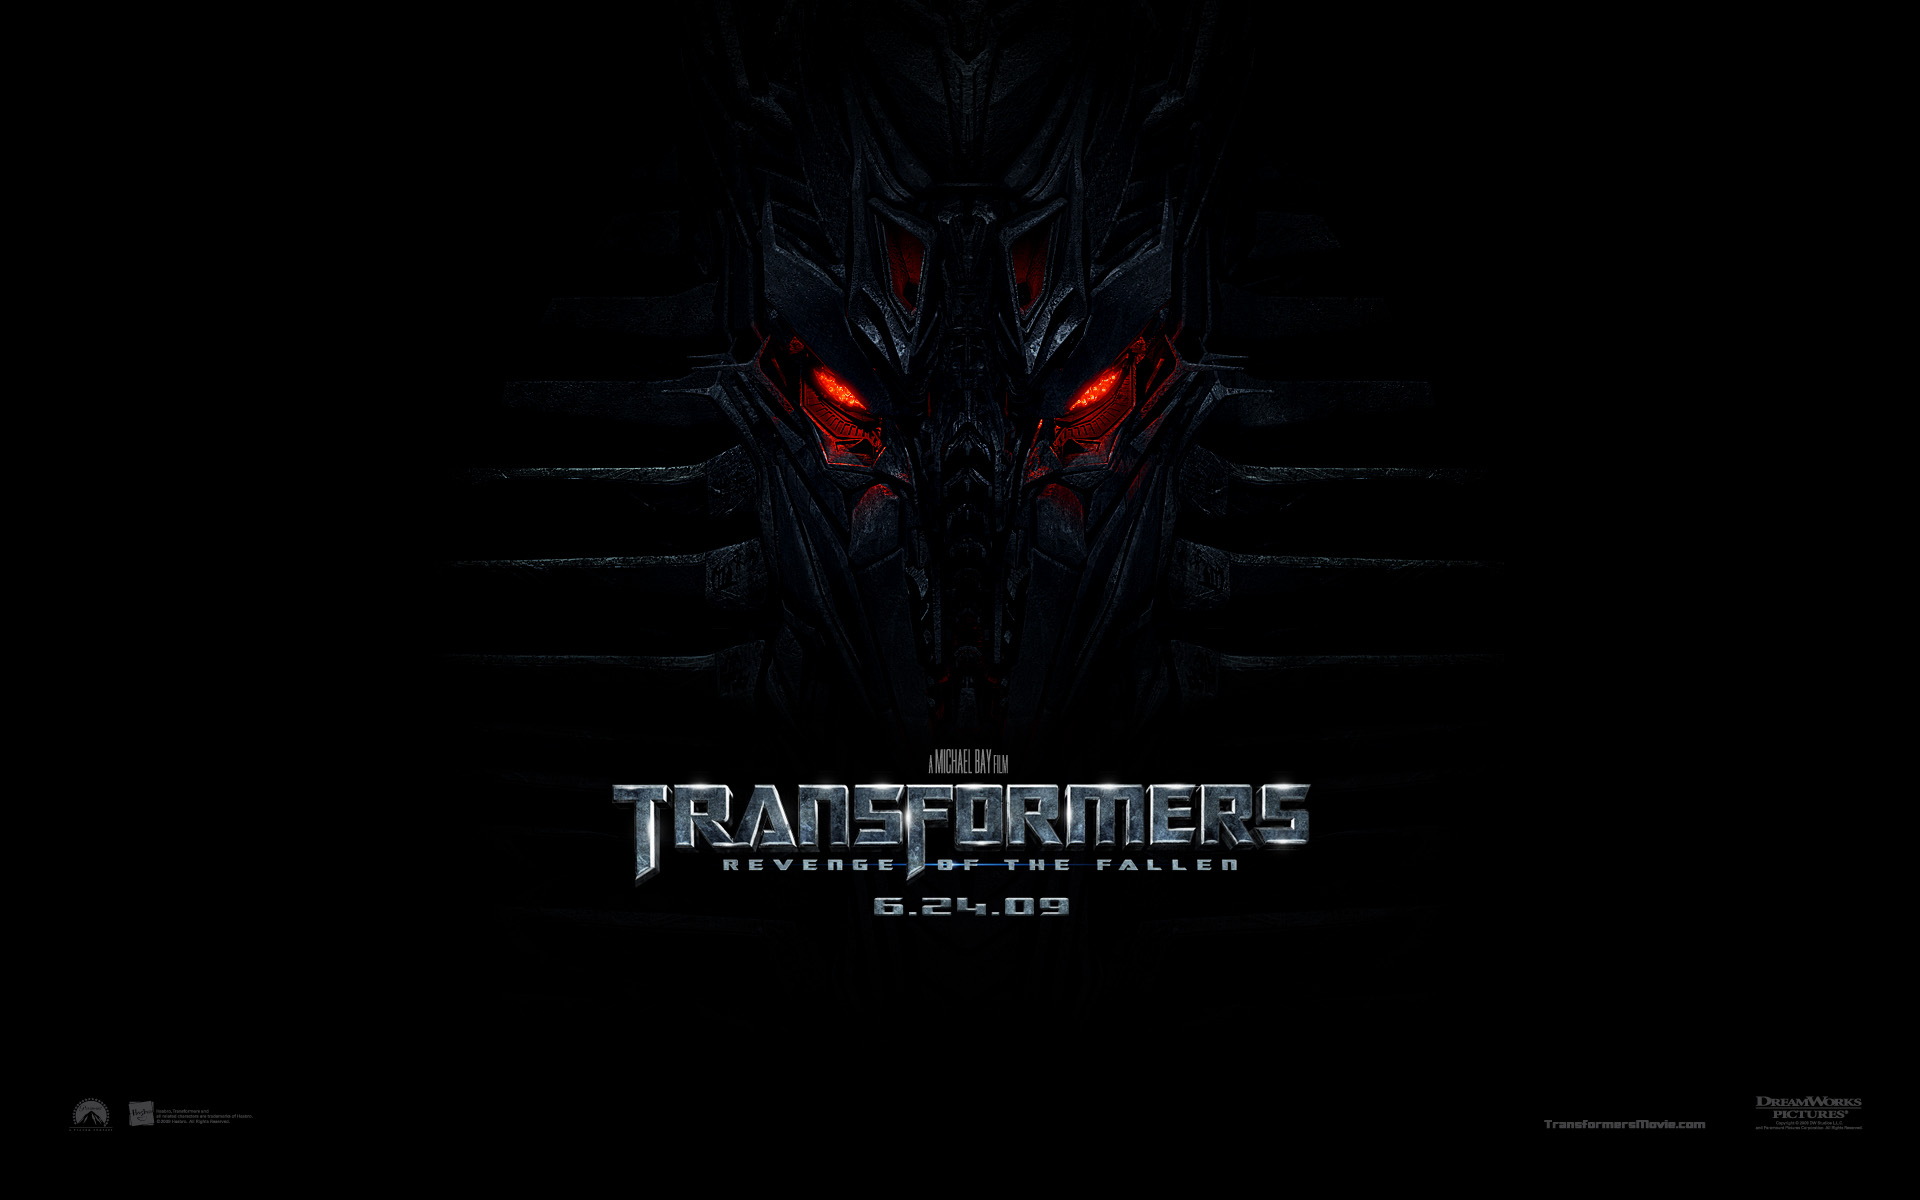 "Transformers: Revenge of the Fallen" desktop wallpaper number 1 (1920 x 1200 pixels)